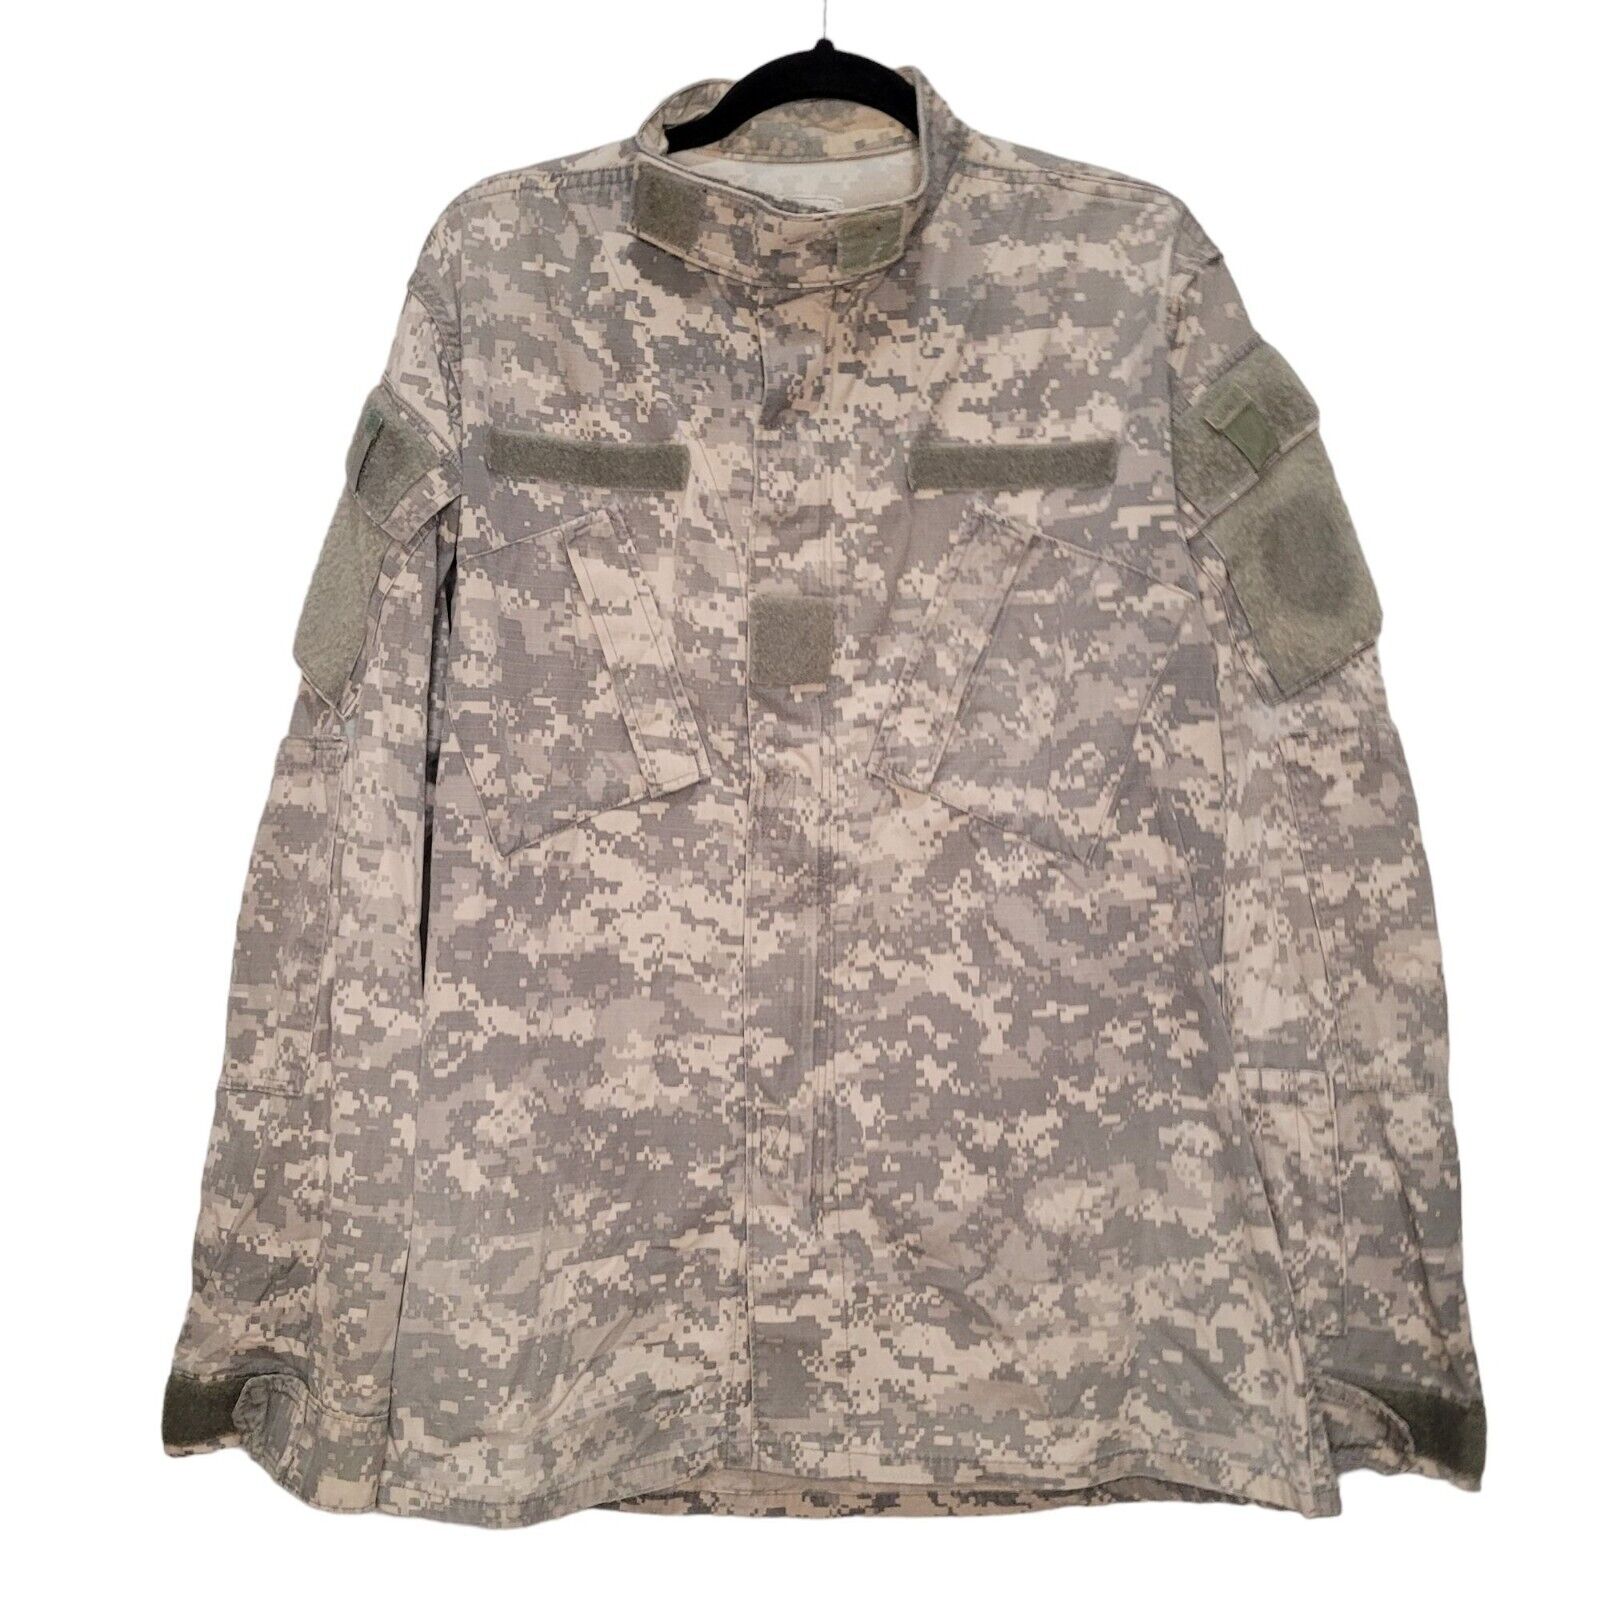 Vintage ACU Digital Camo Jacket Military Issue Medium X-Long